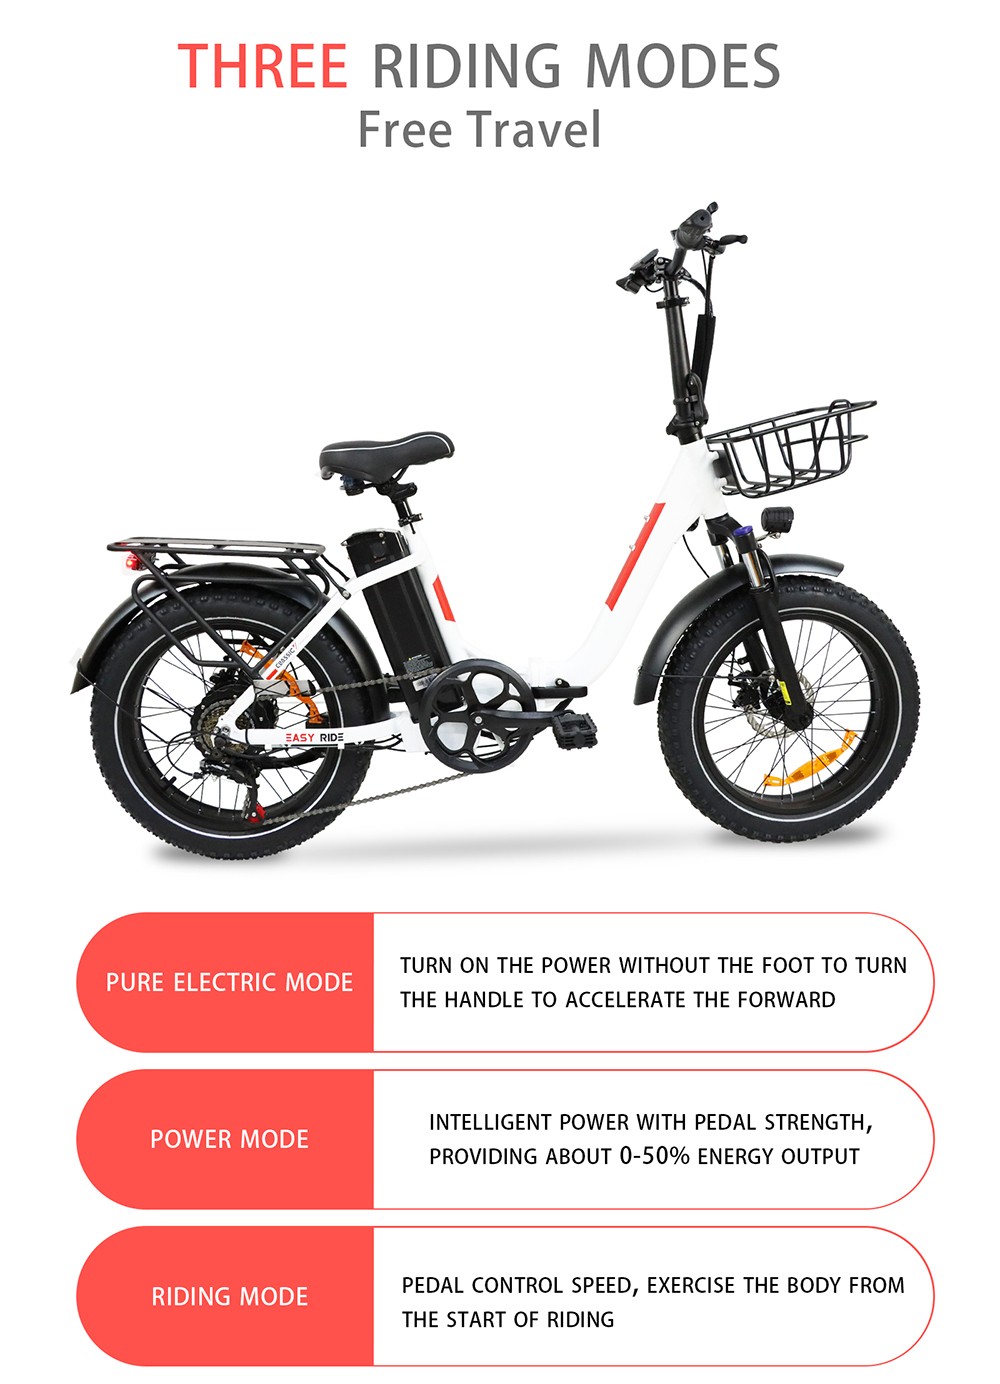 Vélo électrique BAOLUJIE DZ2030, pneu 20 * 4.0 pouces, moteur 500 W, batterie amovible 48 V 13 Ah, vitesse maximale 40 km/h, portée 35-45 km SHIMANO 7 vitesses - Blanc